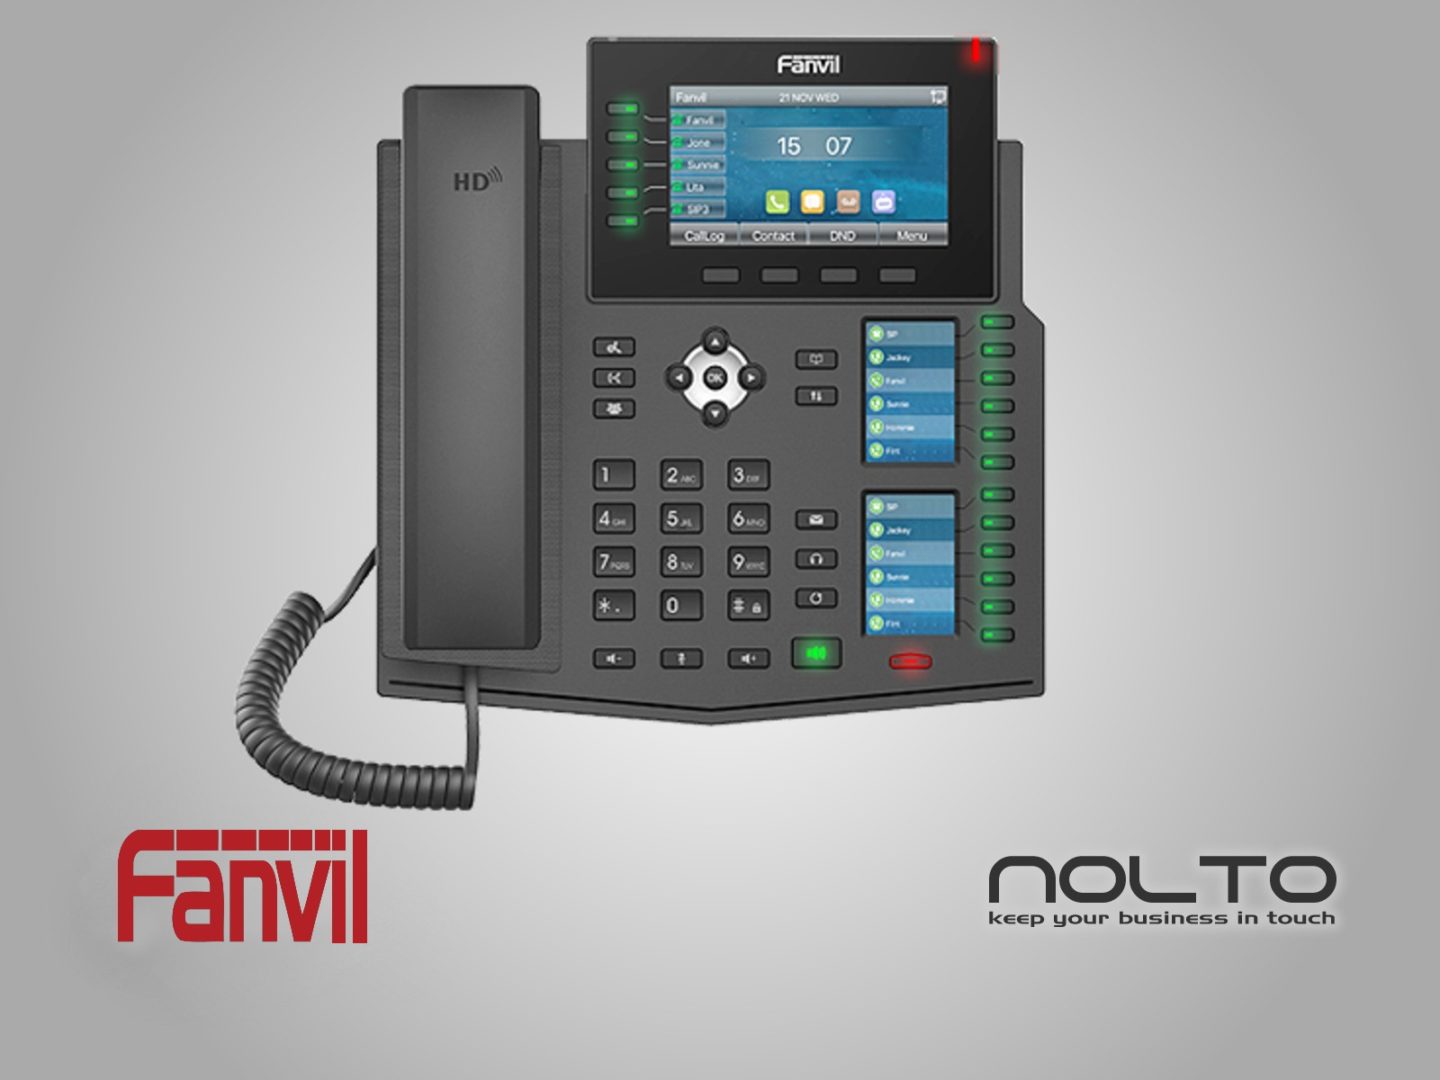 Fanvil X6U 3 Ekranlı Profesyonel Sekreter Konsol yada Resepsiyonistler için Ideal Masa IP Telefonu.